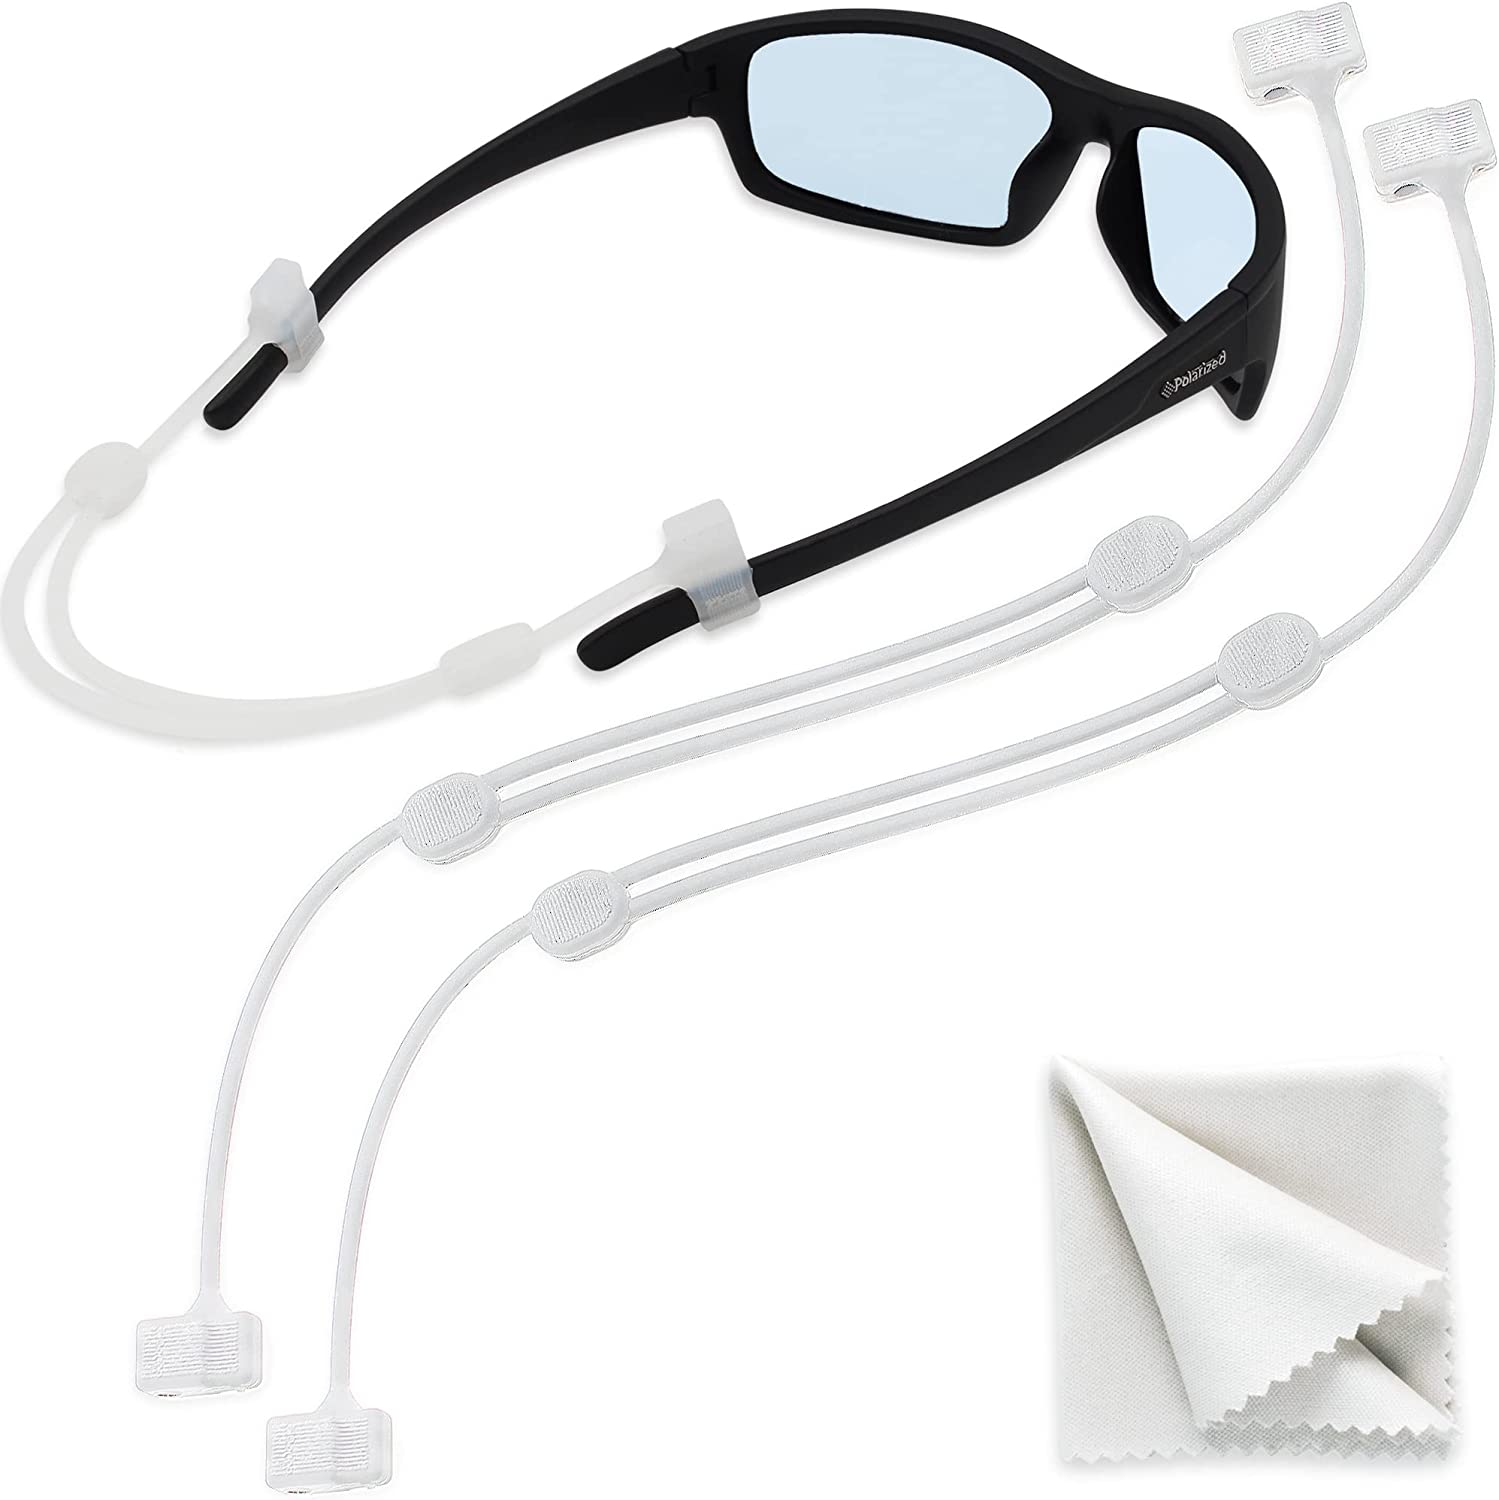 Sigonna glasses holder for eye glasses